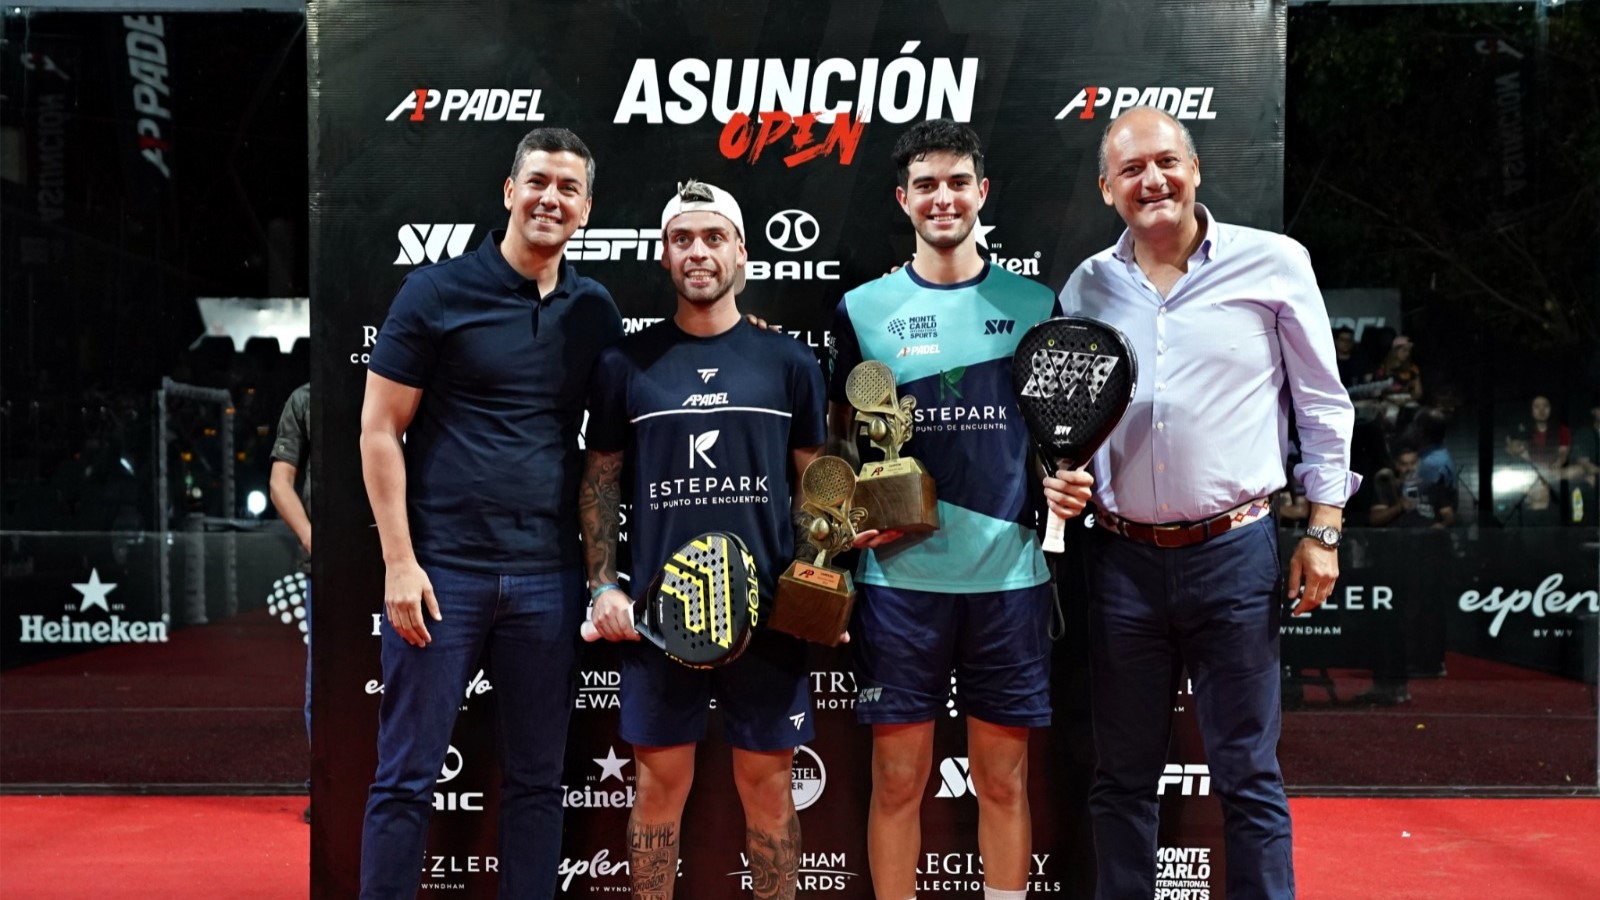 A1 Padel Asuncion Open – De titel voor De Pascual/Alfonso!